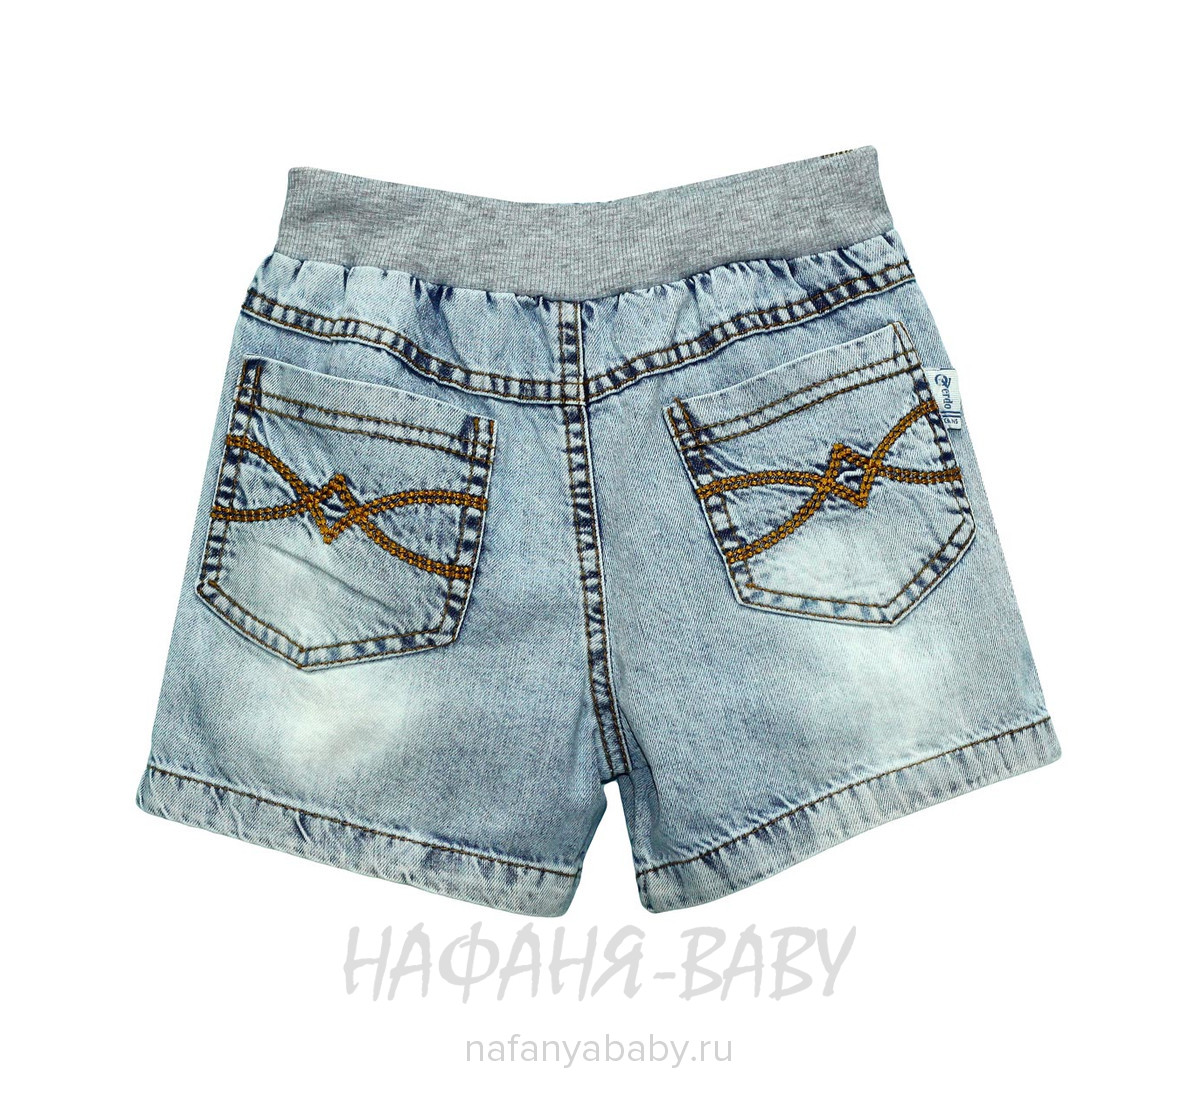 Детские джинсовые шорты + косынка OVERDO, купить в интернет магазине Нафаня. арт: 4916.